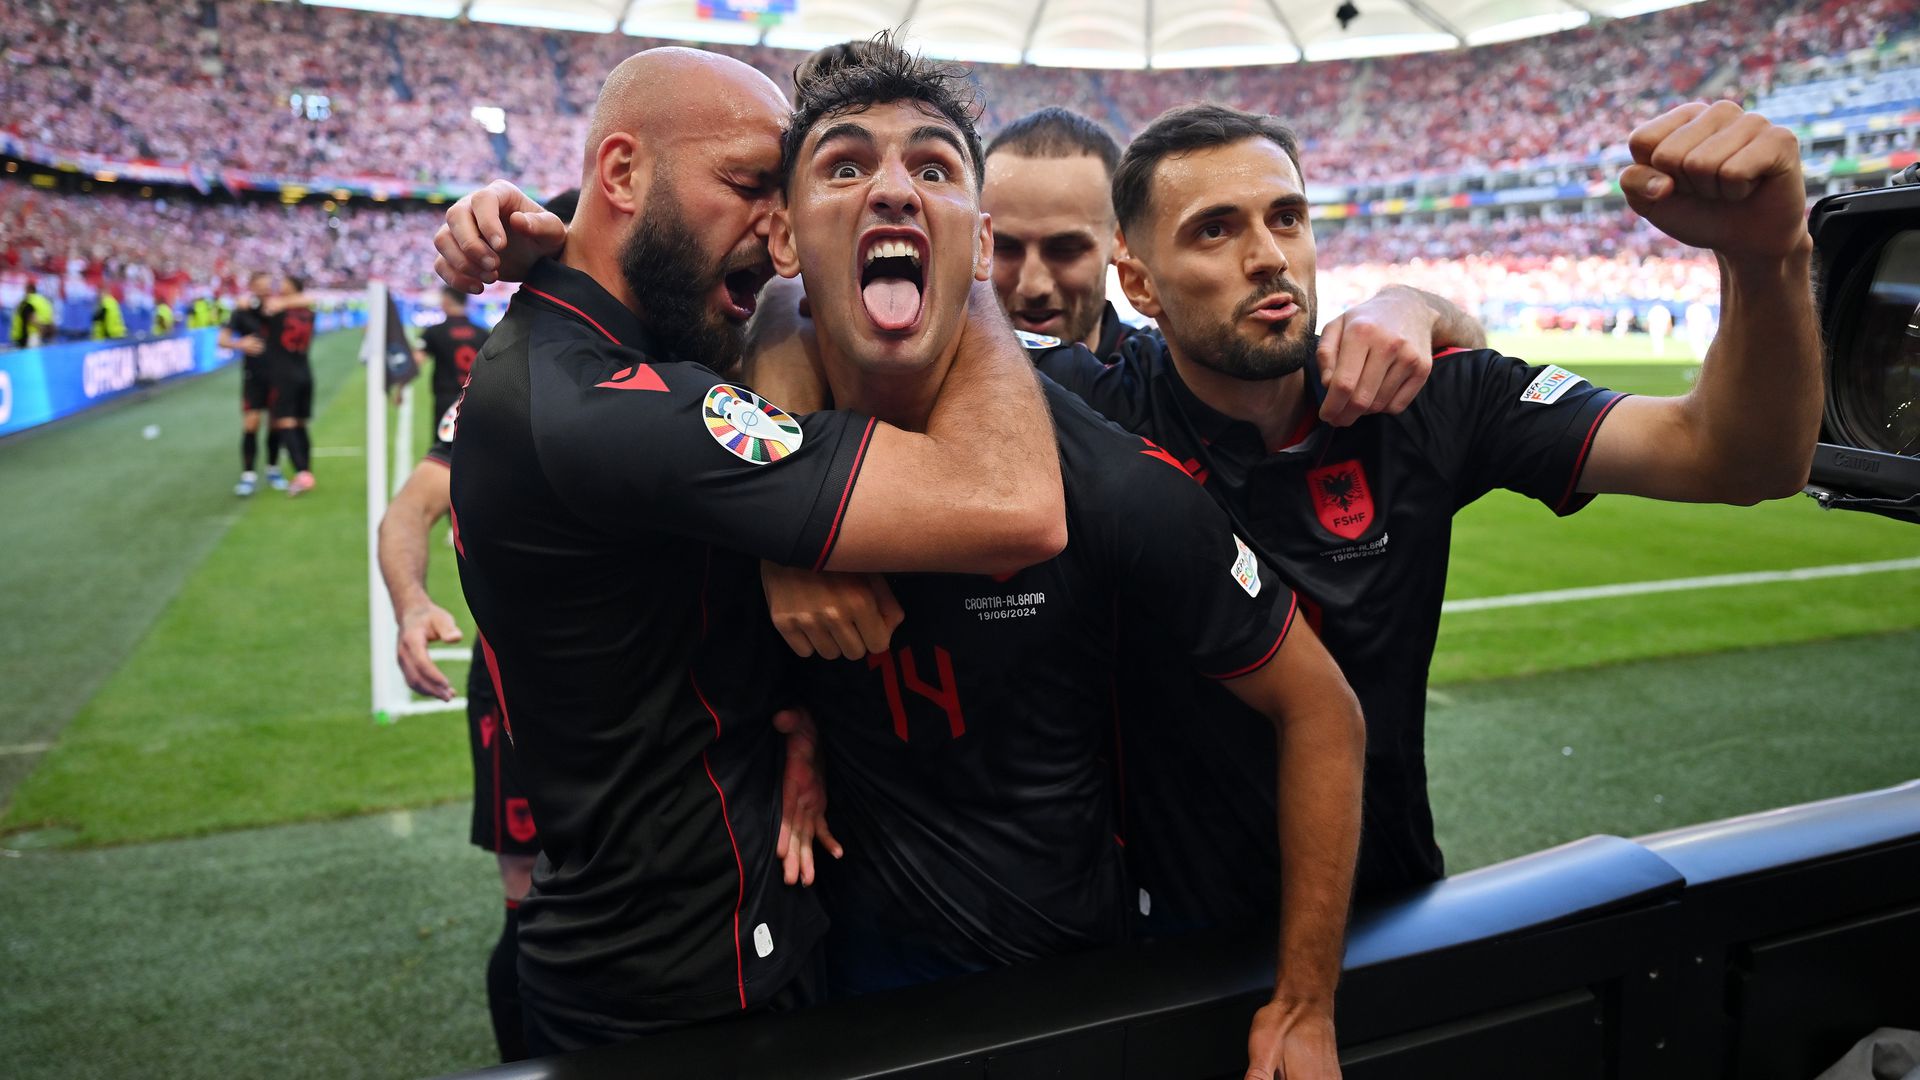 Az albán válogatott az első fordulóhoz hasonlóan jól kezdett, Qazim Laci fejese után kezdődhetett az önfeledt ünneplés. (Fotó: Getty Images)